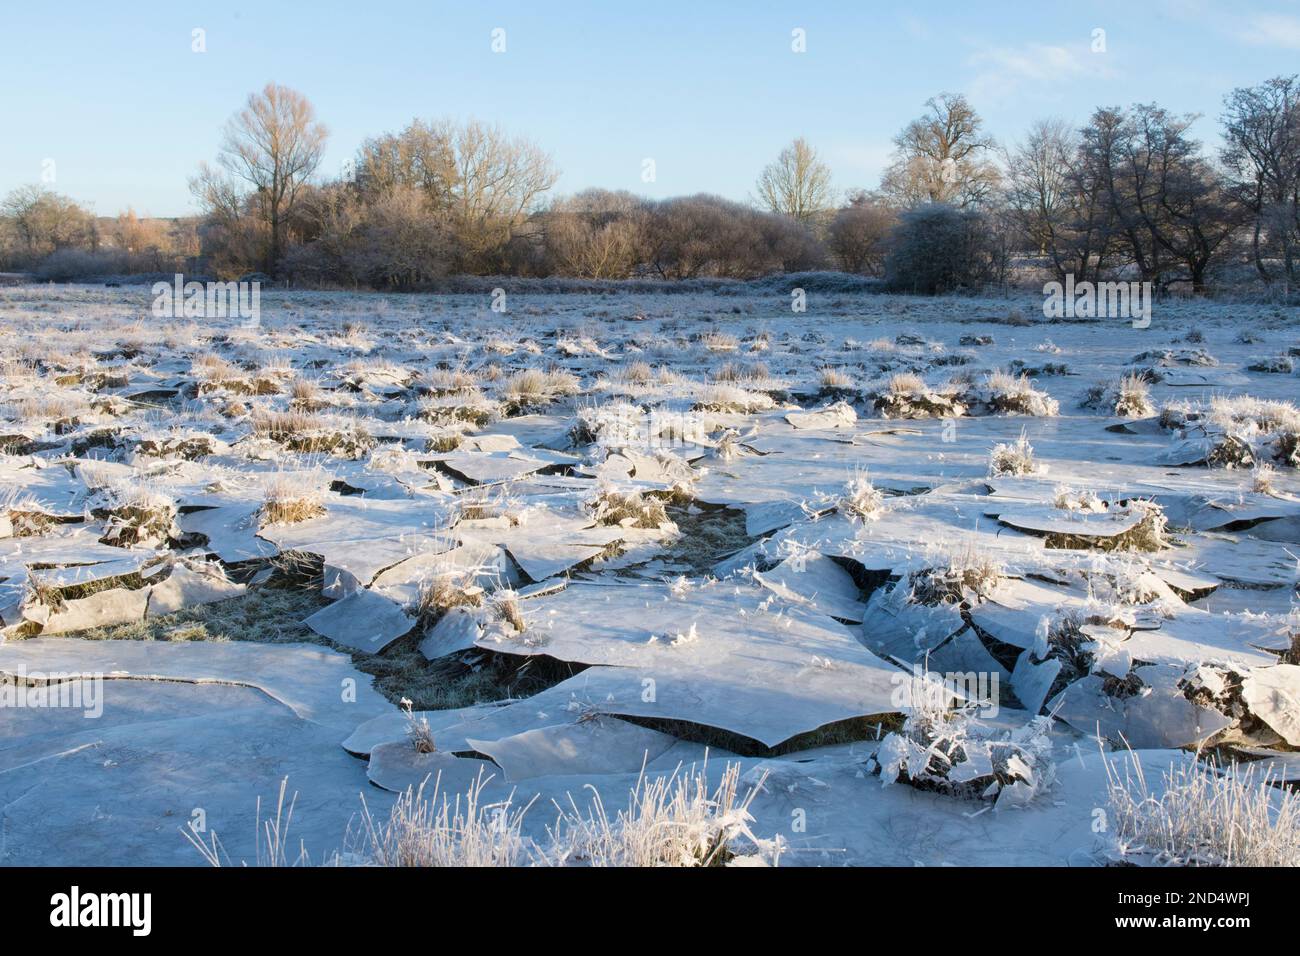 La glace s'est effondrée, le champ a été inondé puis gelé, l'eau s'est évacuée en laissant la glace suspendue qui s'est ensuite effondrée, dans le champ, les ruines de Cowdray, Sussex, Banque D'Images